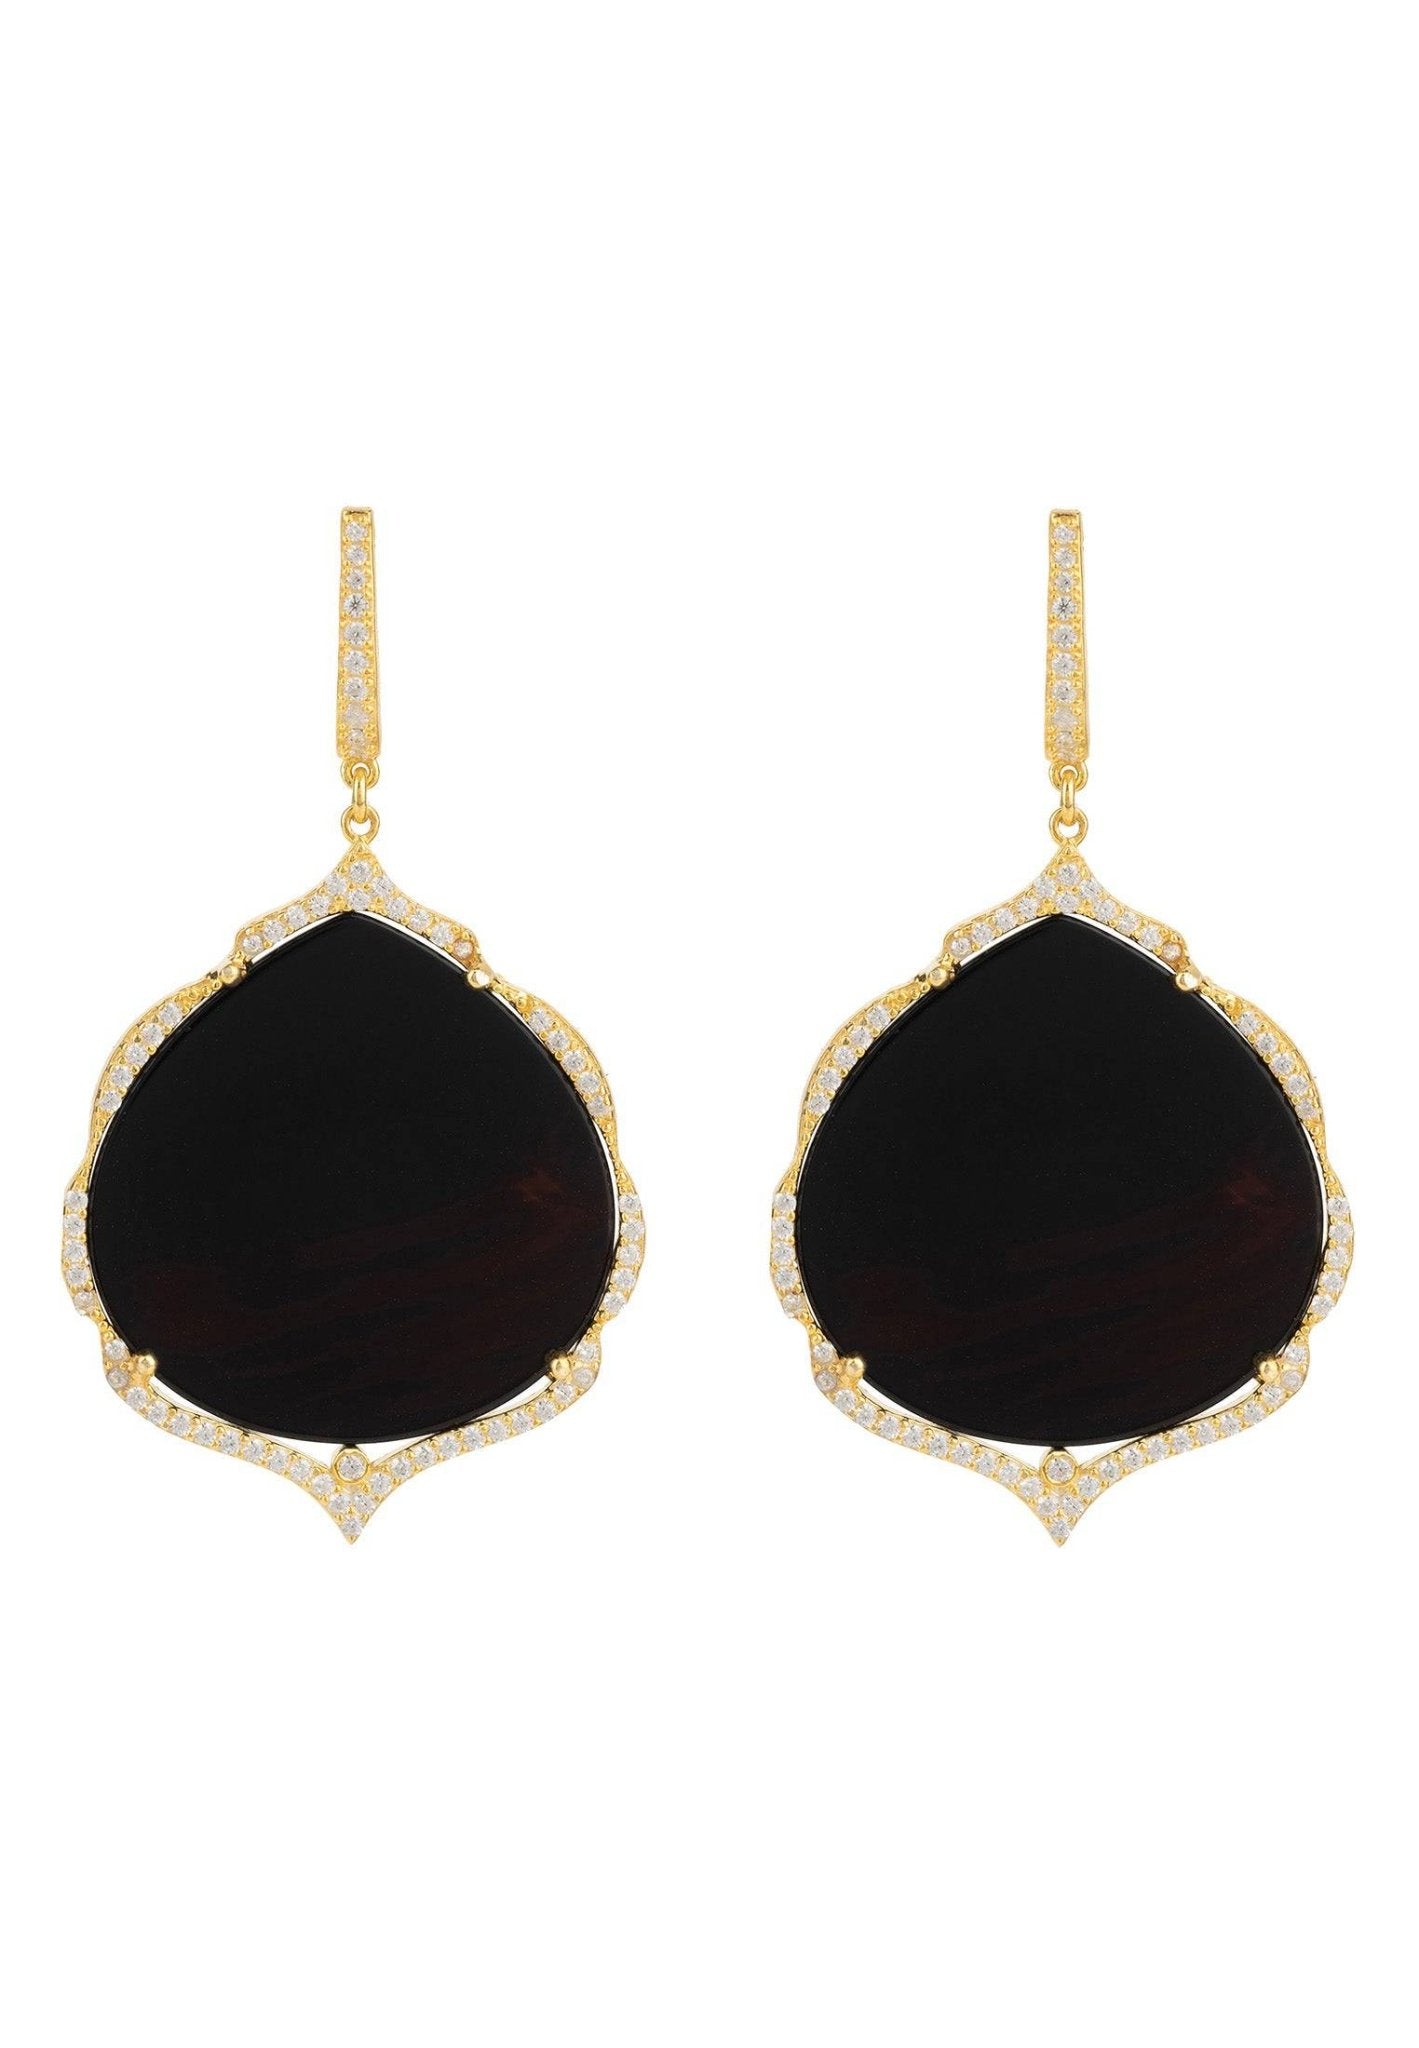 Antoinette Earrings Gold Black Onyx - LATELITA Earrings